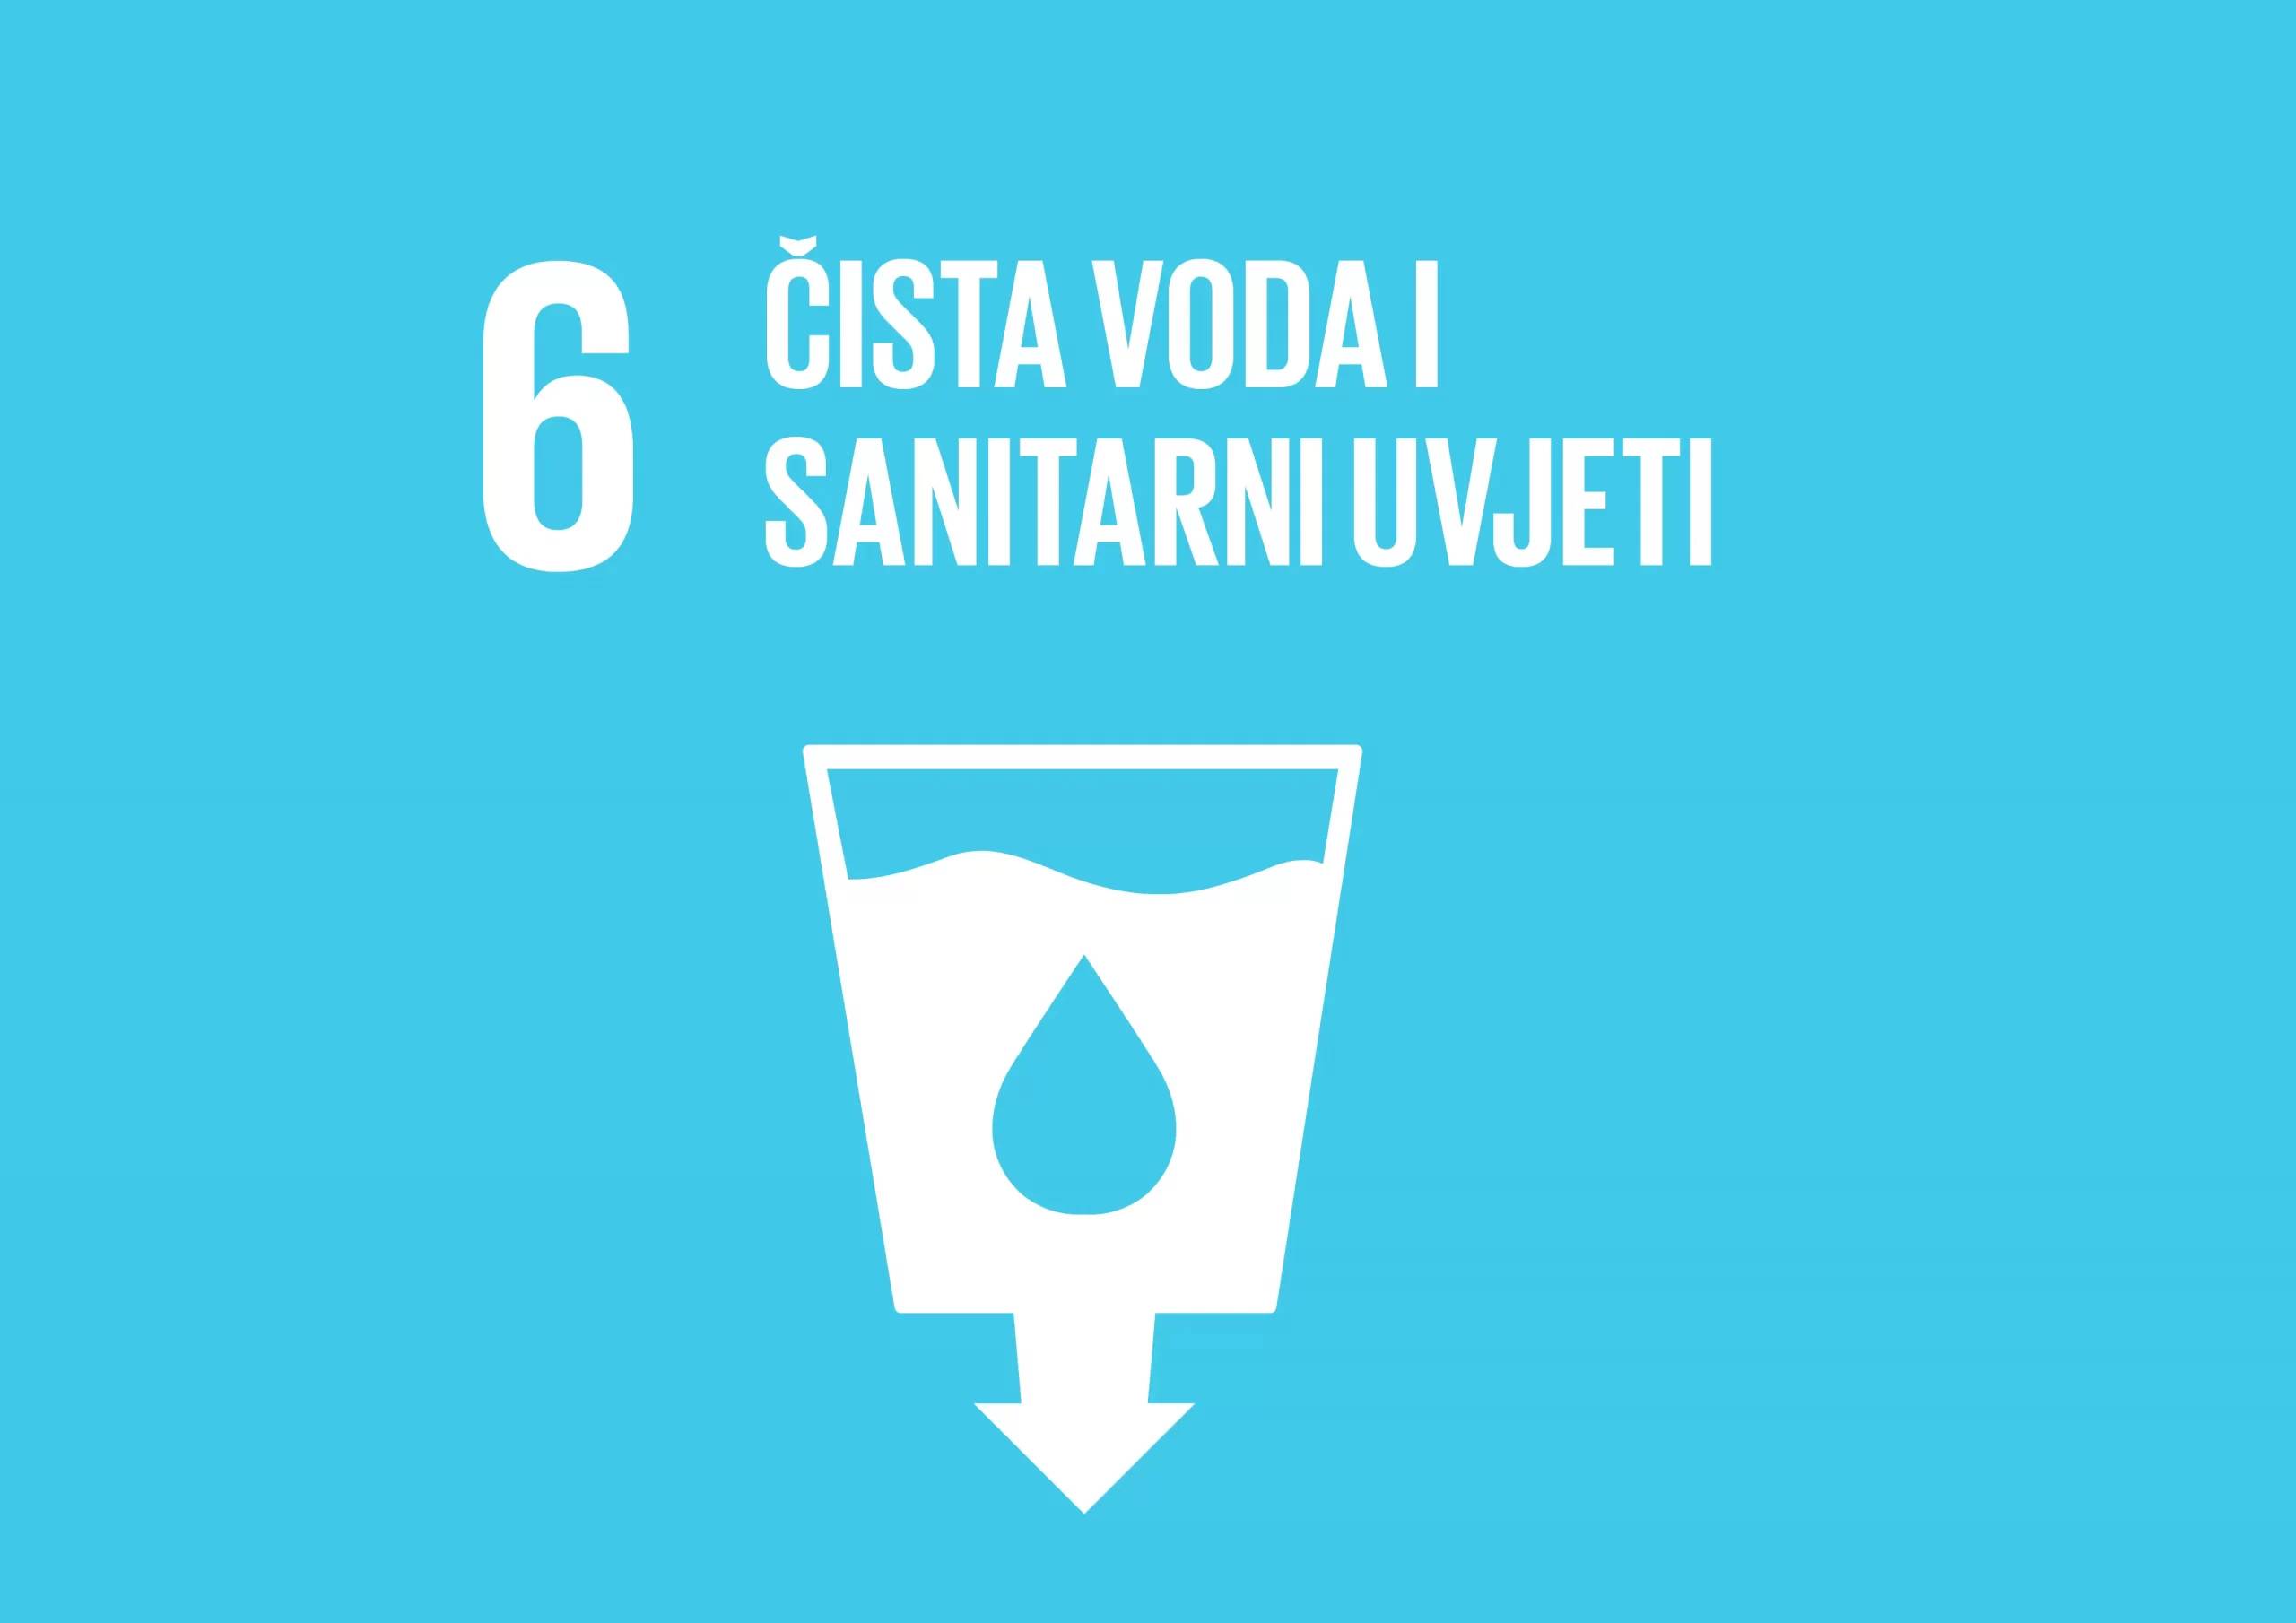 6. Globalni cilj održivog razvoja: Čista voda i sanitarni uvjeti